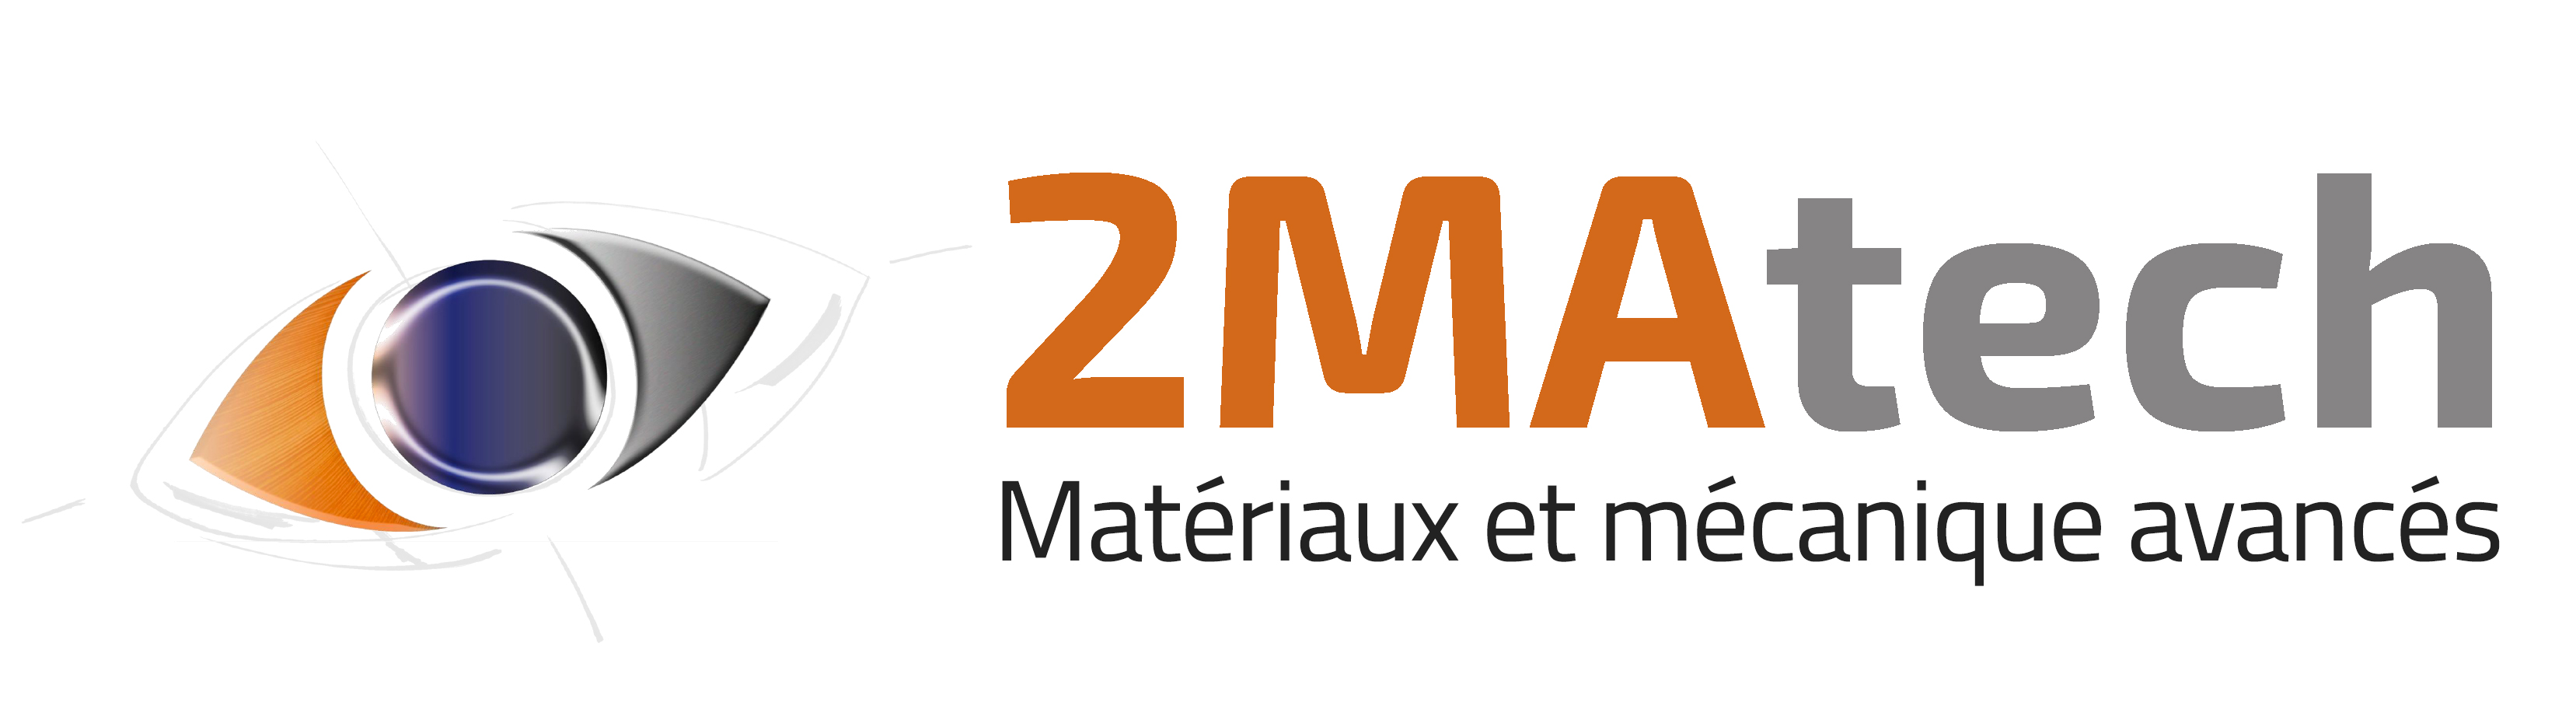 2MAtech, matériaux et mécaniques avancés à Clermont Ferrand